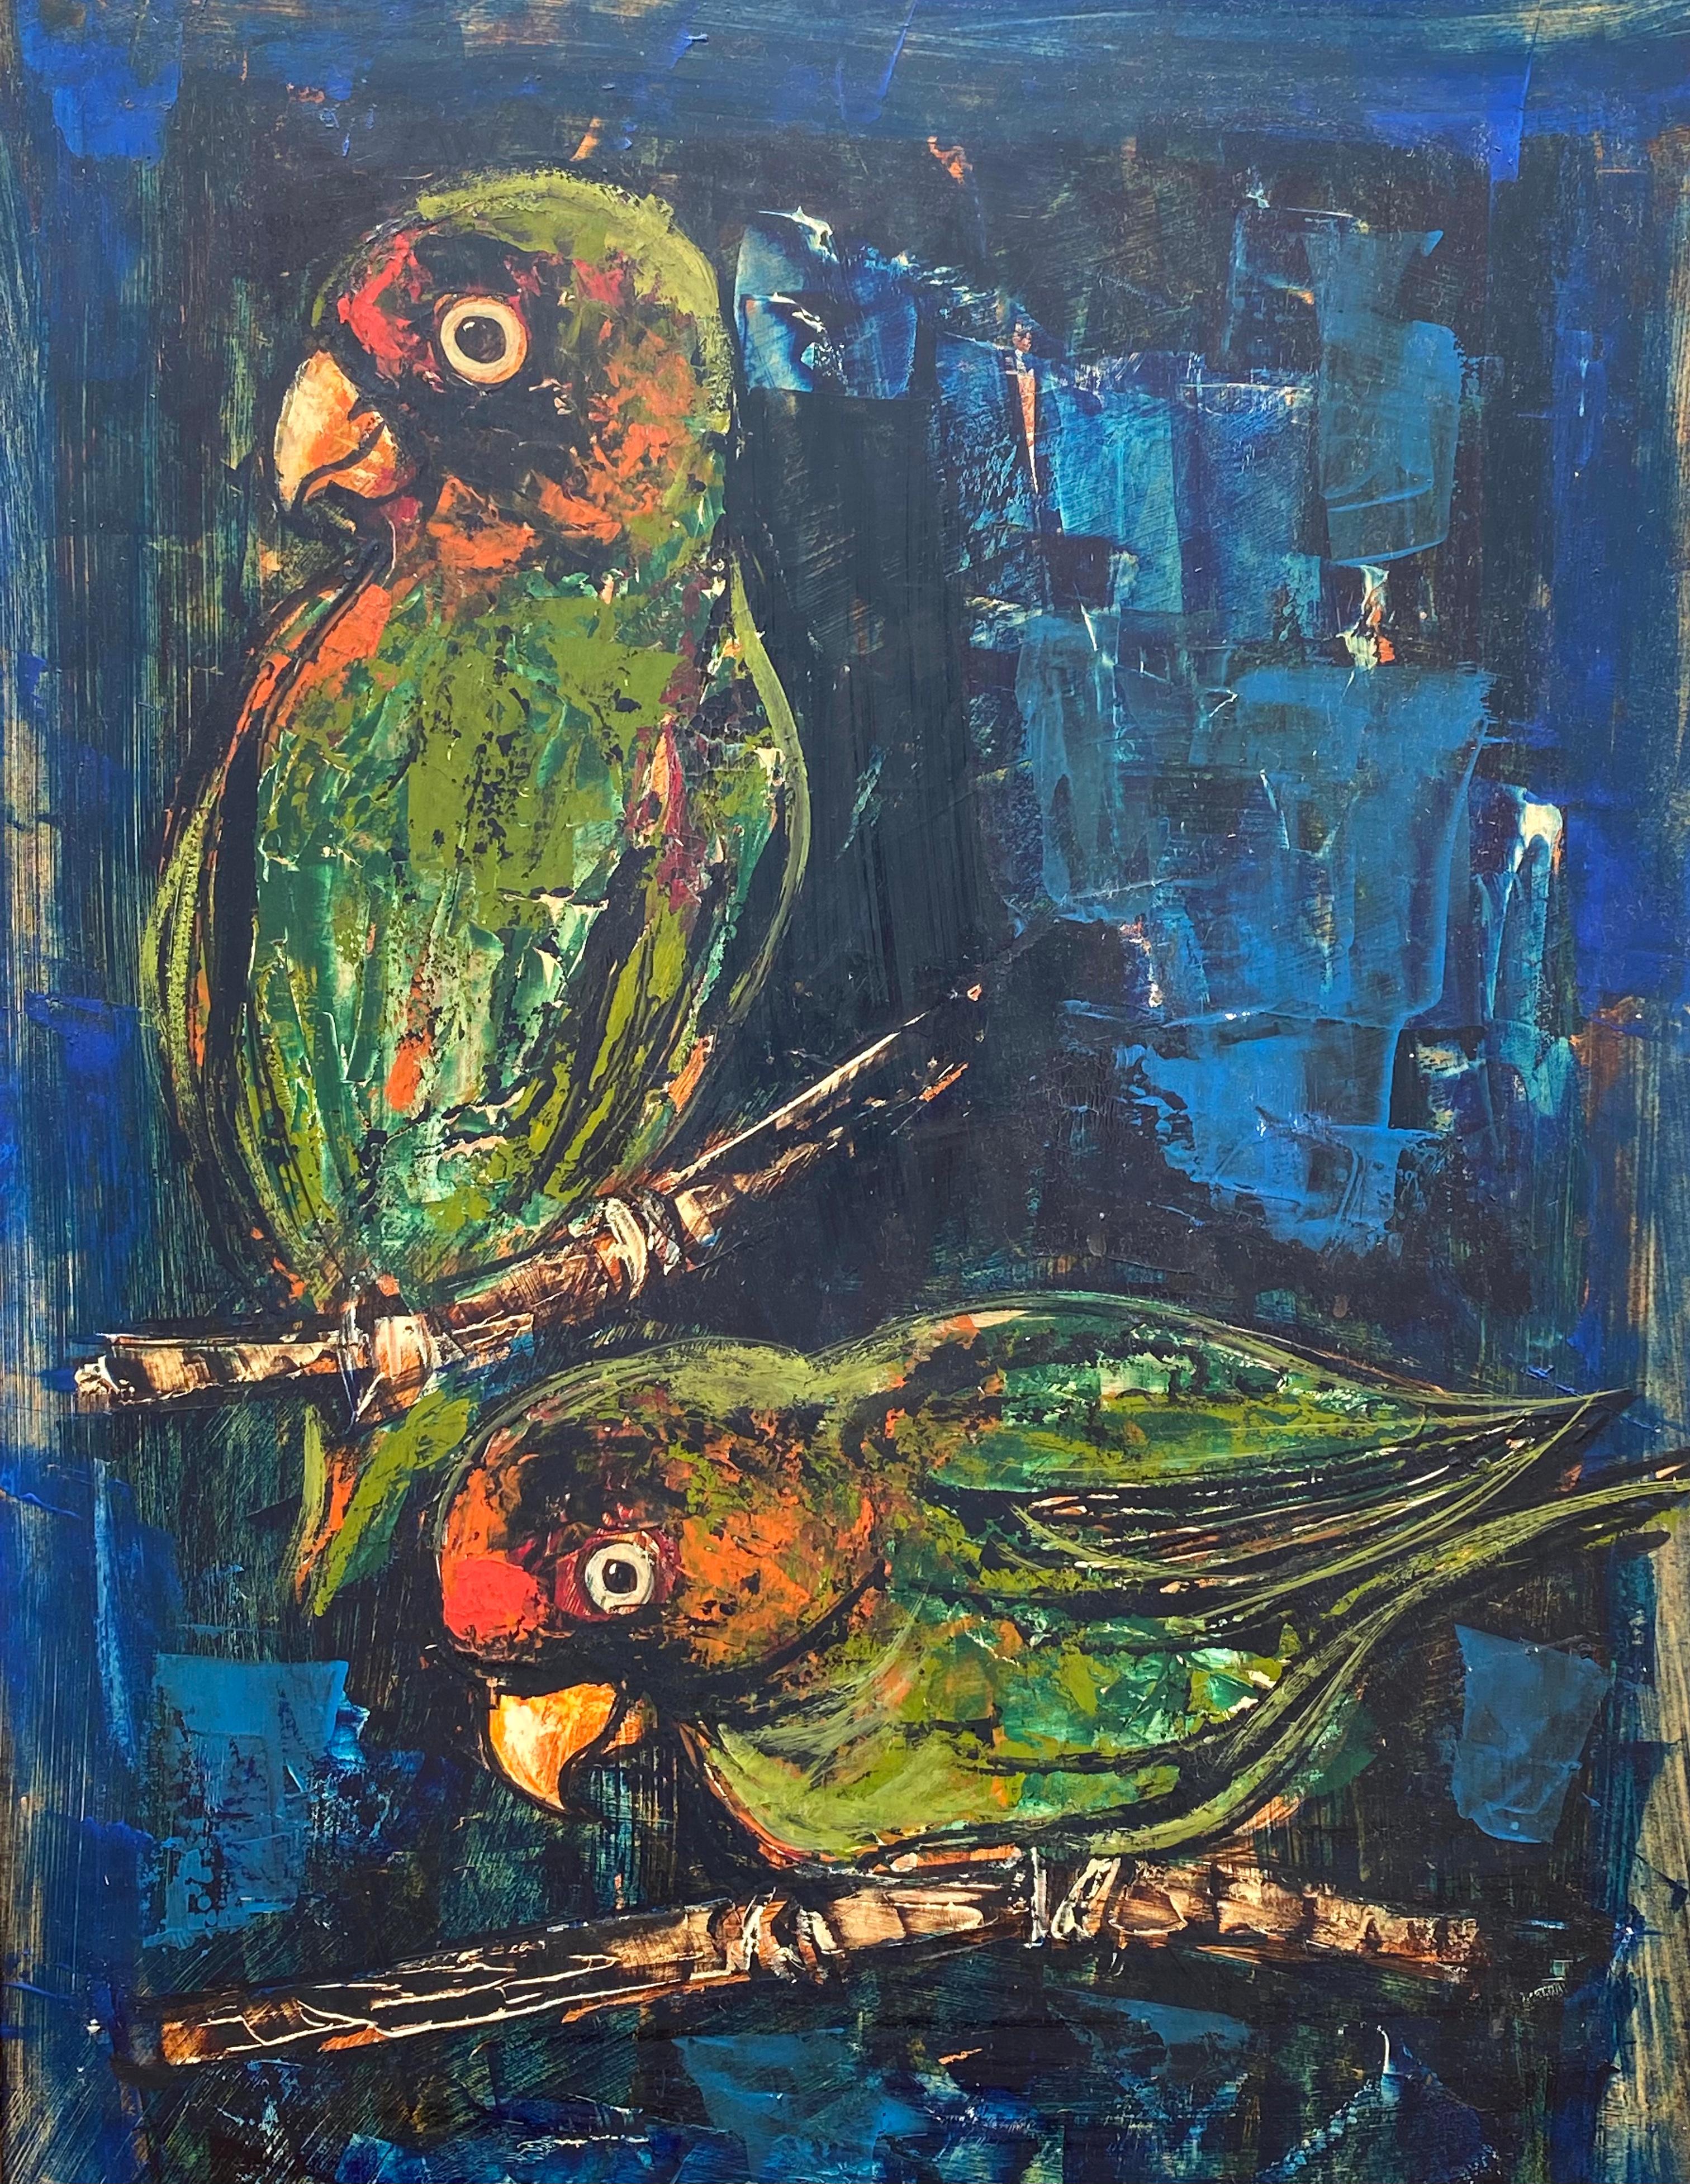 Original Ölgemälde auf schwerem Karton mit einem Papageienpaar im postmodernen Stil des französischen Künstlers Pierre Mas. Signiert unten links und datiert 1963.  Der Zustand ist sehr gut. Leichte Wölbung des Kunstwerks und Tonung auf der